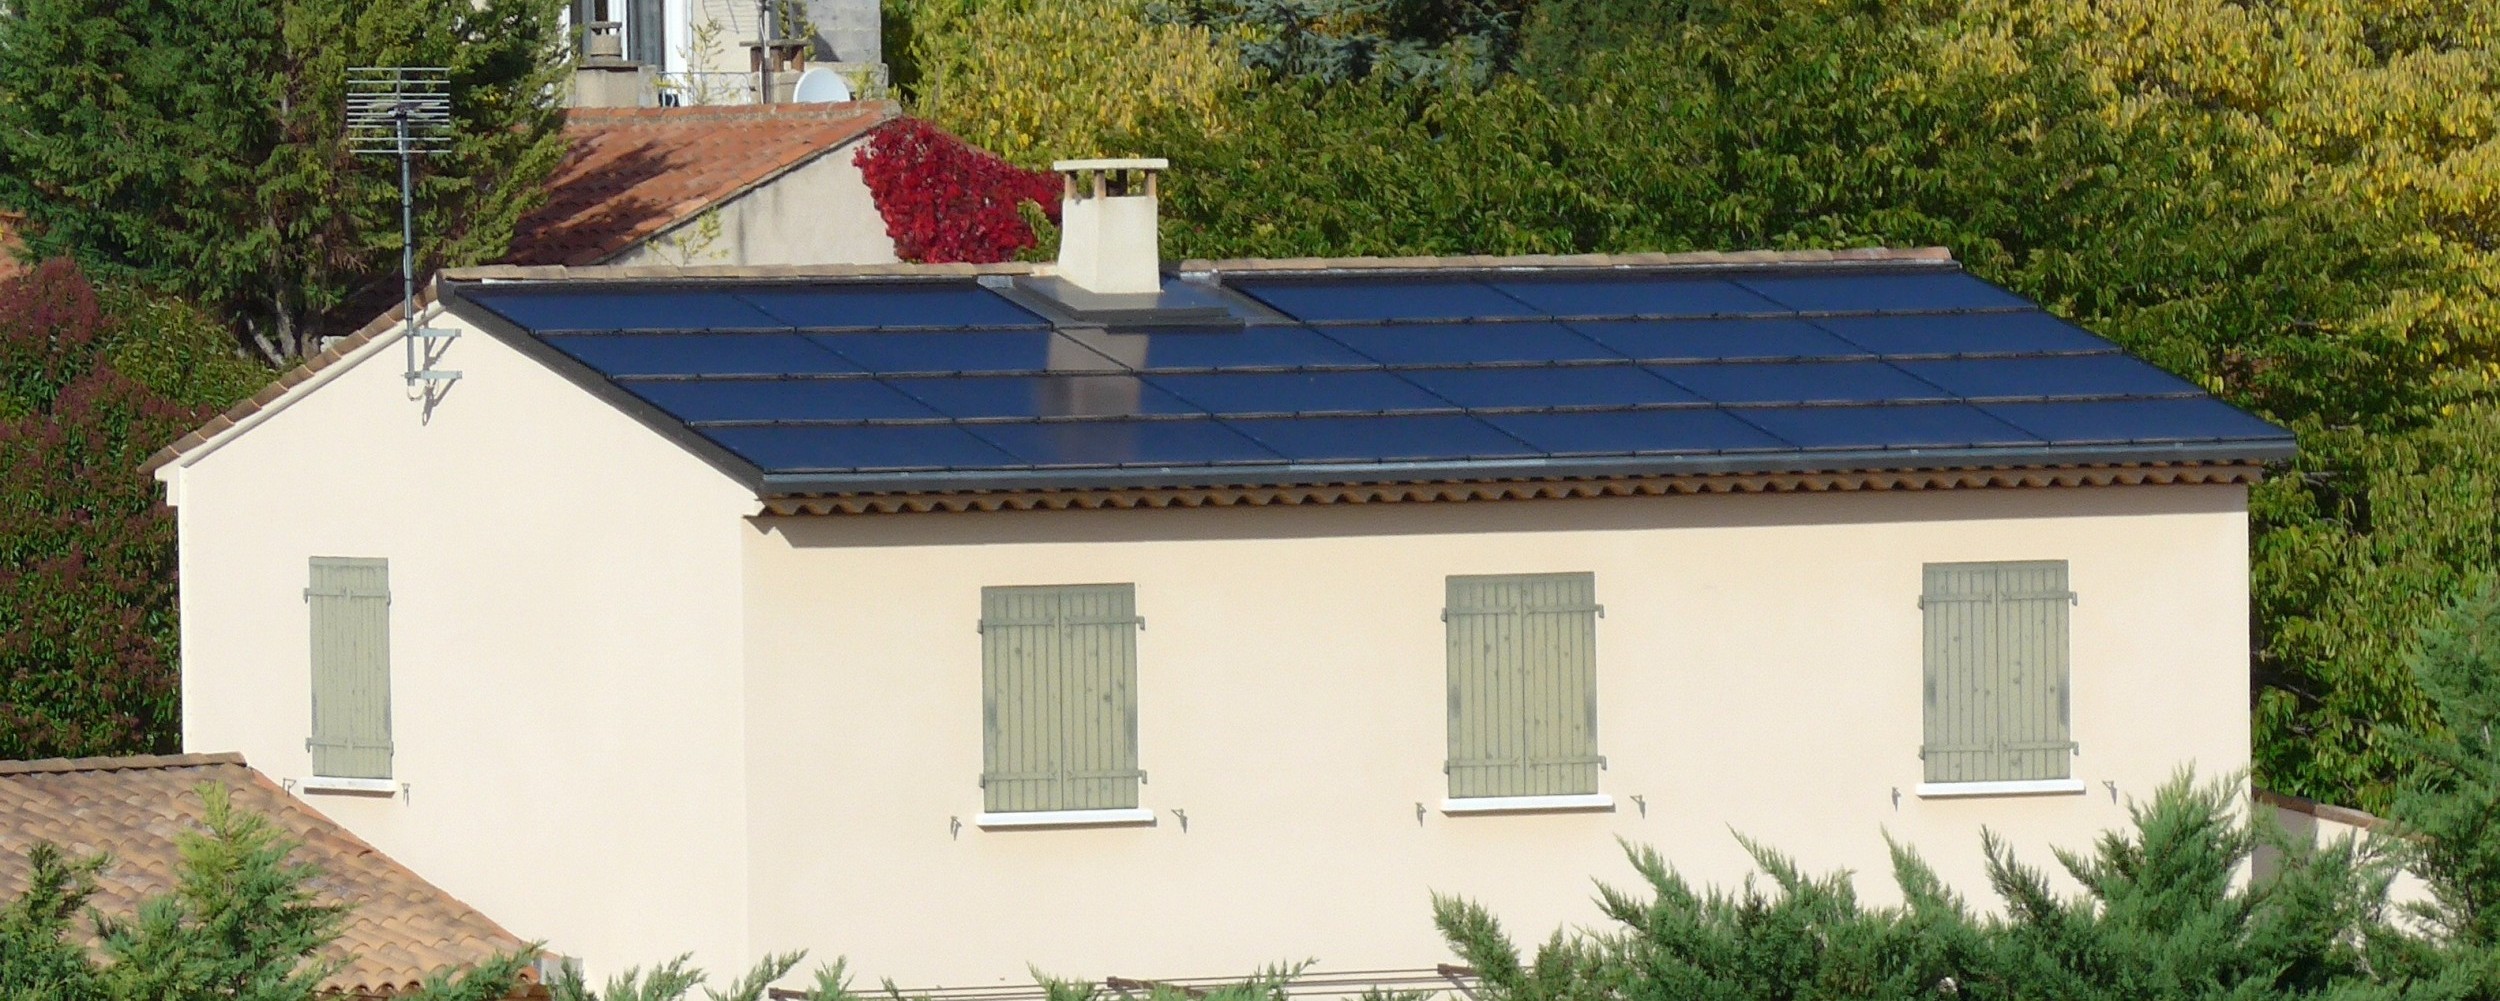 Maison Treiber à Cabrières d'Aigues 6.67 kWc réalisé en septembre 2016